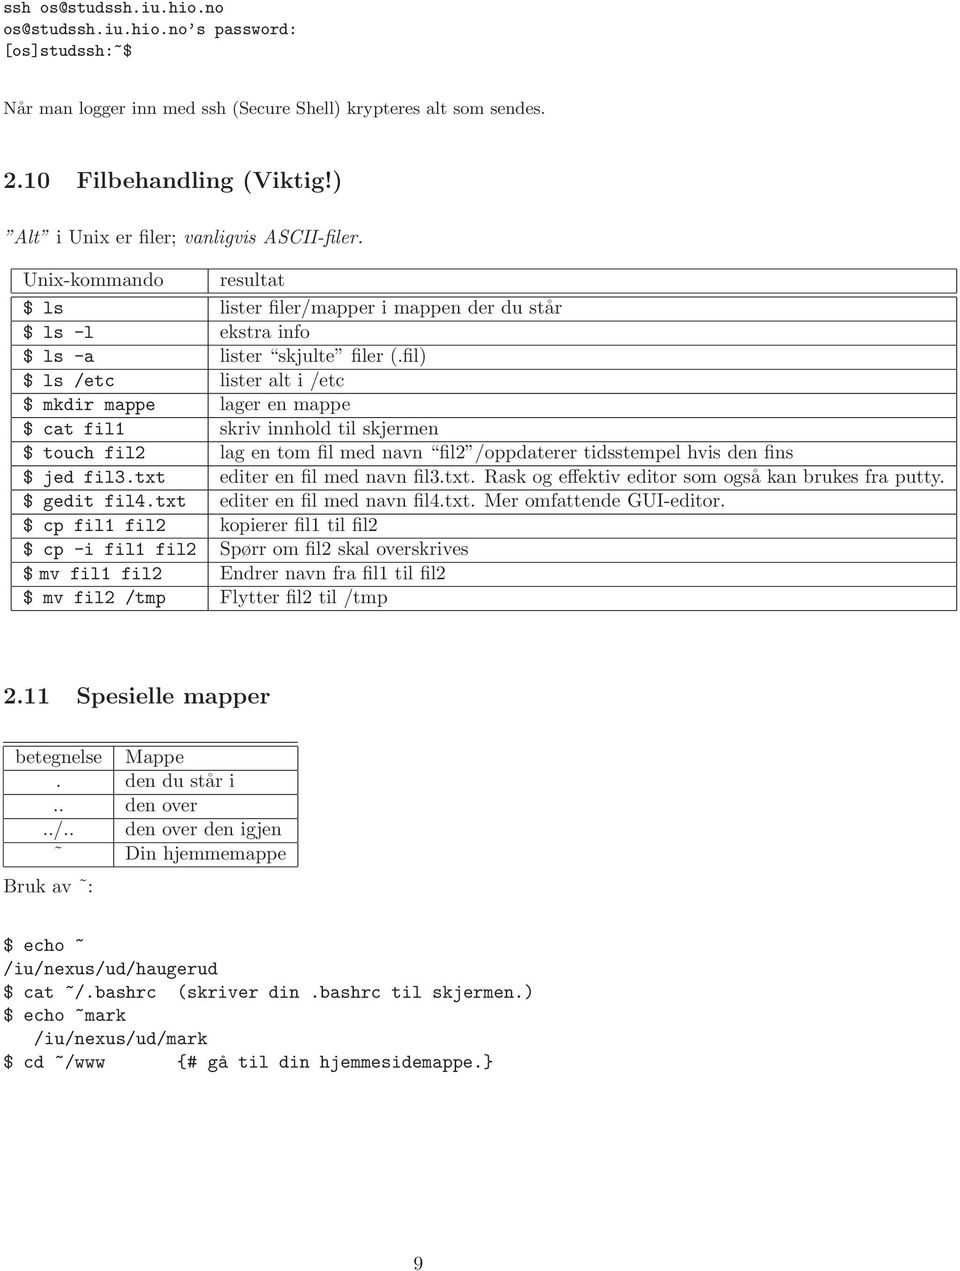 fil) $ ls /etc lister alt i /etc $ mkdir mappe lager en mappe $ cat fil1 skriv innhold til skjermen $ touch fil2 lag en tom fil med navn fil2 /oppdaterer tidsstempel hvis den fins $ jed fil3.